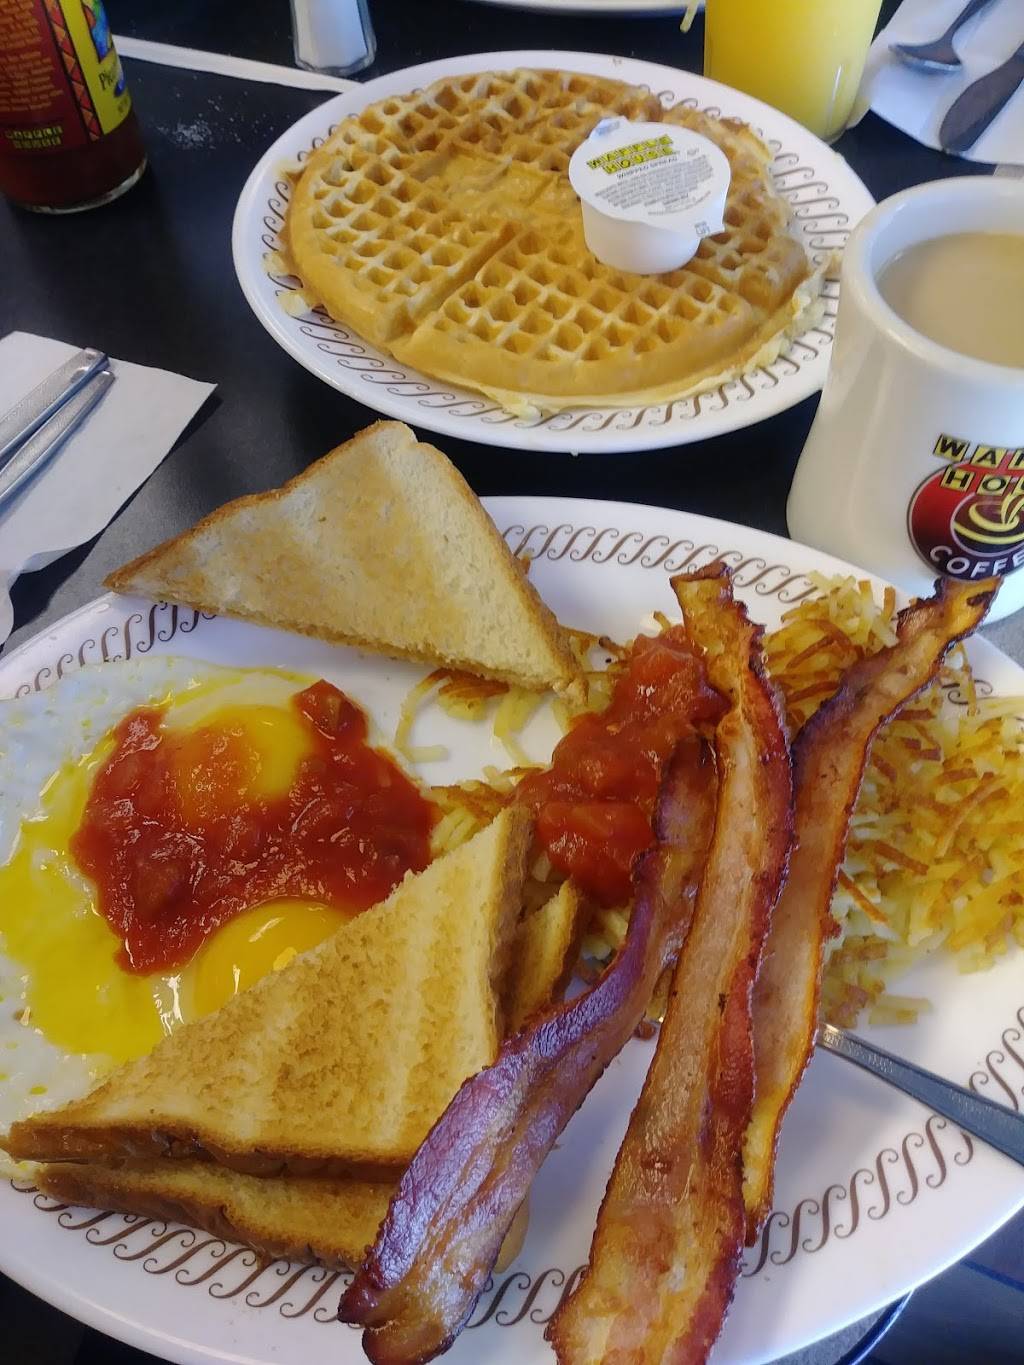 Waffle House Meal Takeaway 15747 Wallisville Rd Houston Tx